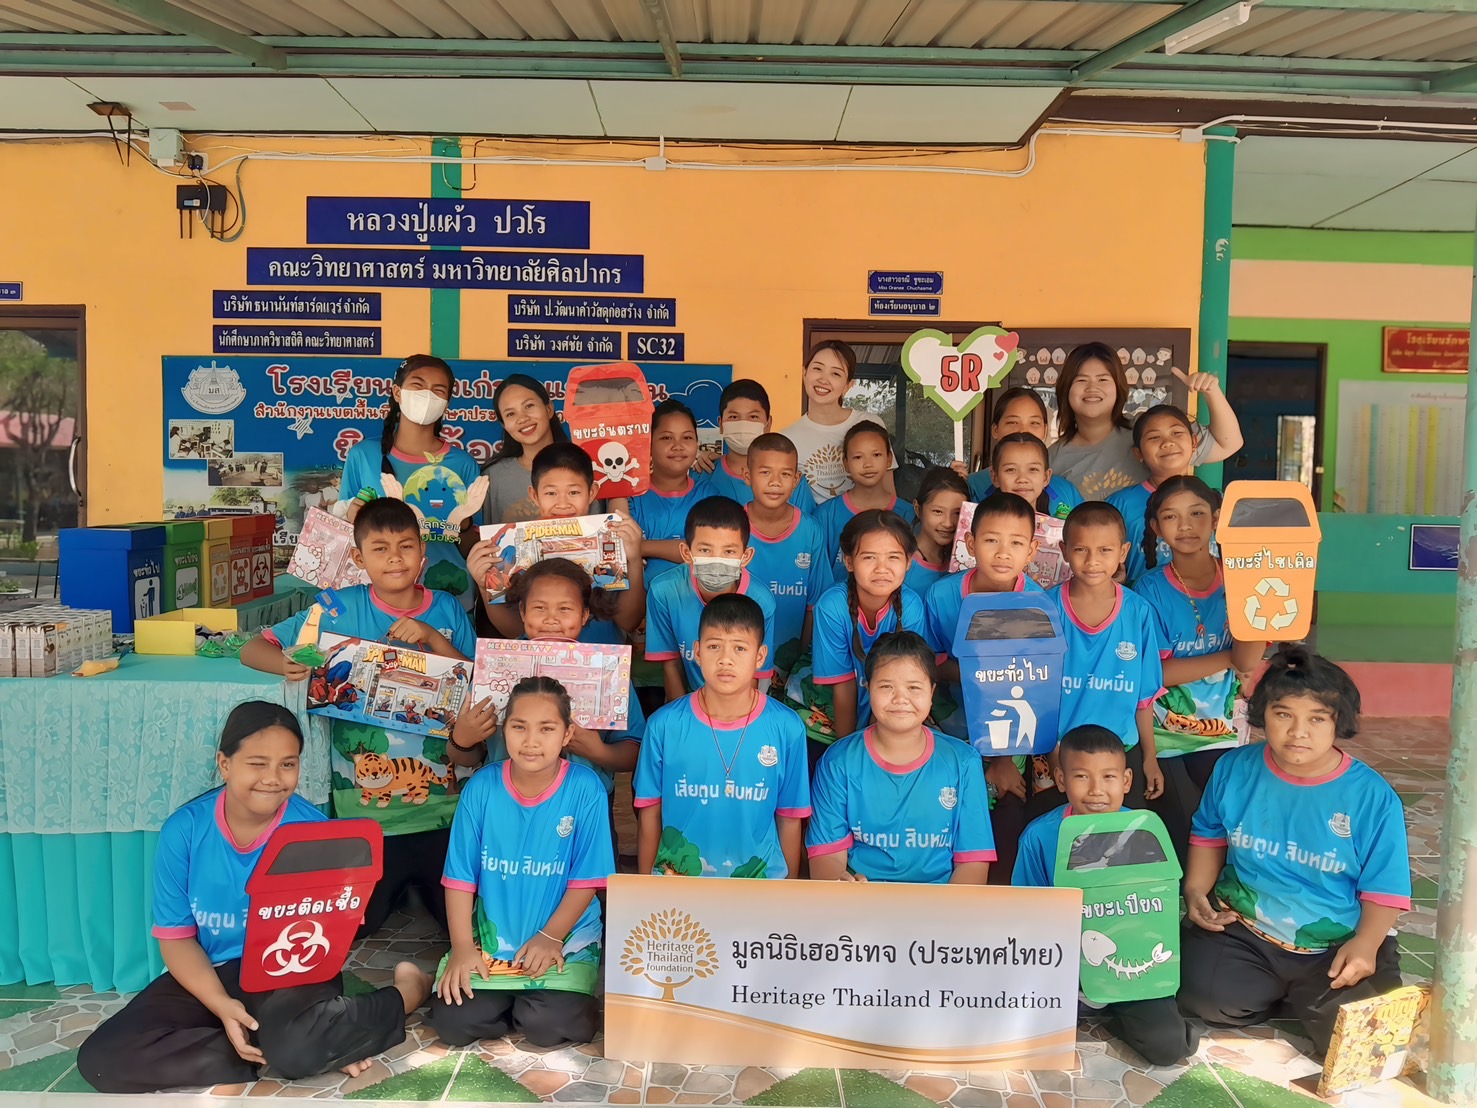 มูลนิธิเฮอริเทจ (ประเทศไทย) จัดโครงการ “ห้องเรียนเพื่อการพัฒนาที่ยั่งยืน ครั้งที่ 1”  ณ โรงเรียนเมืองเก่ากำแพงแสน จ.นครปฐม